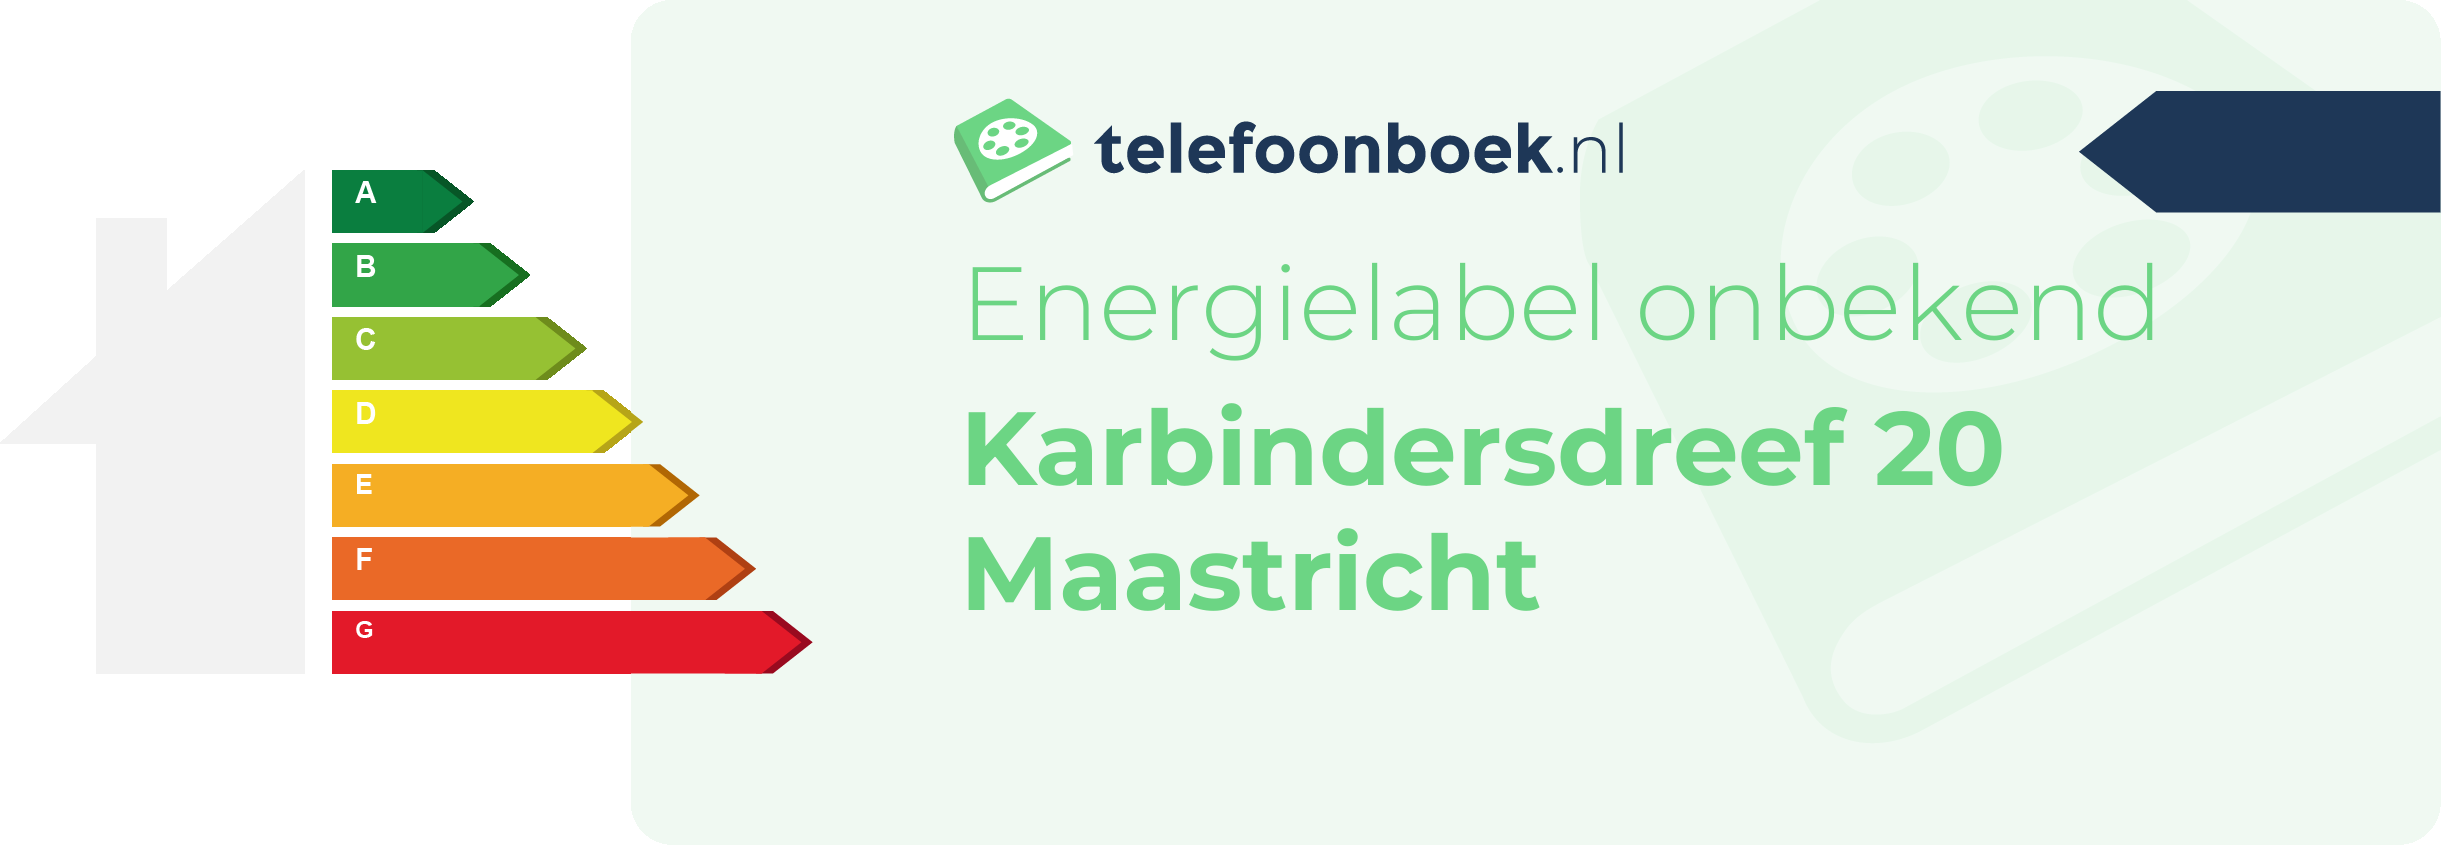 Energielabel Karbindersdreef 20 Maastricht